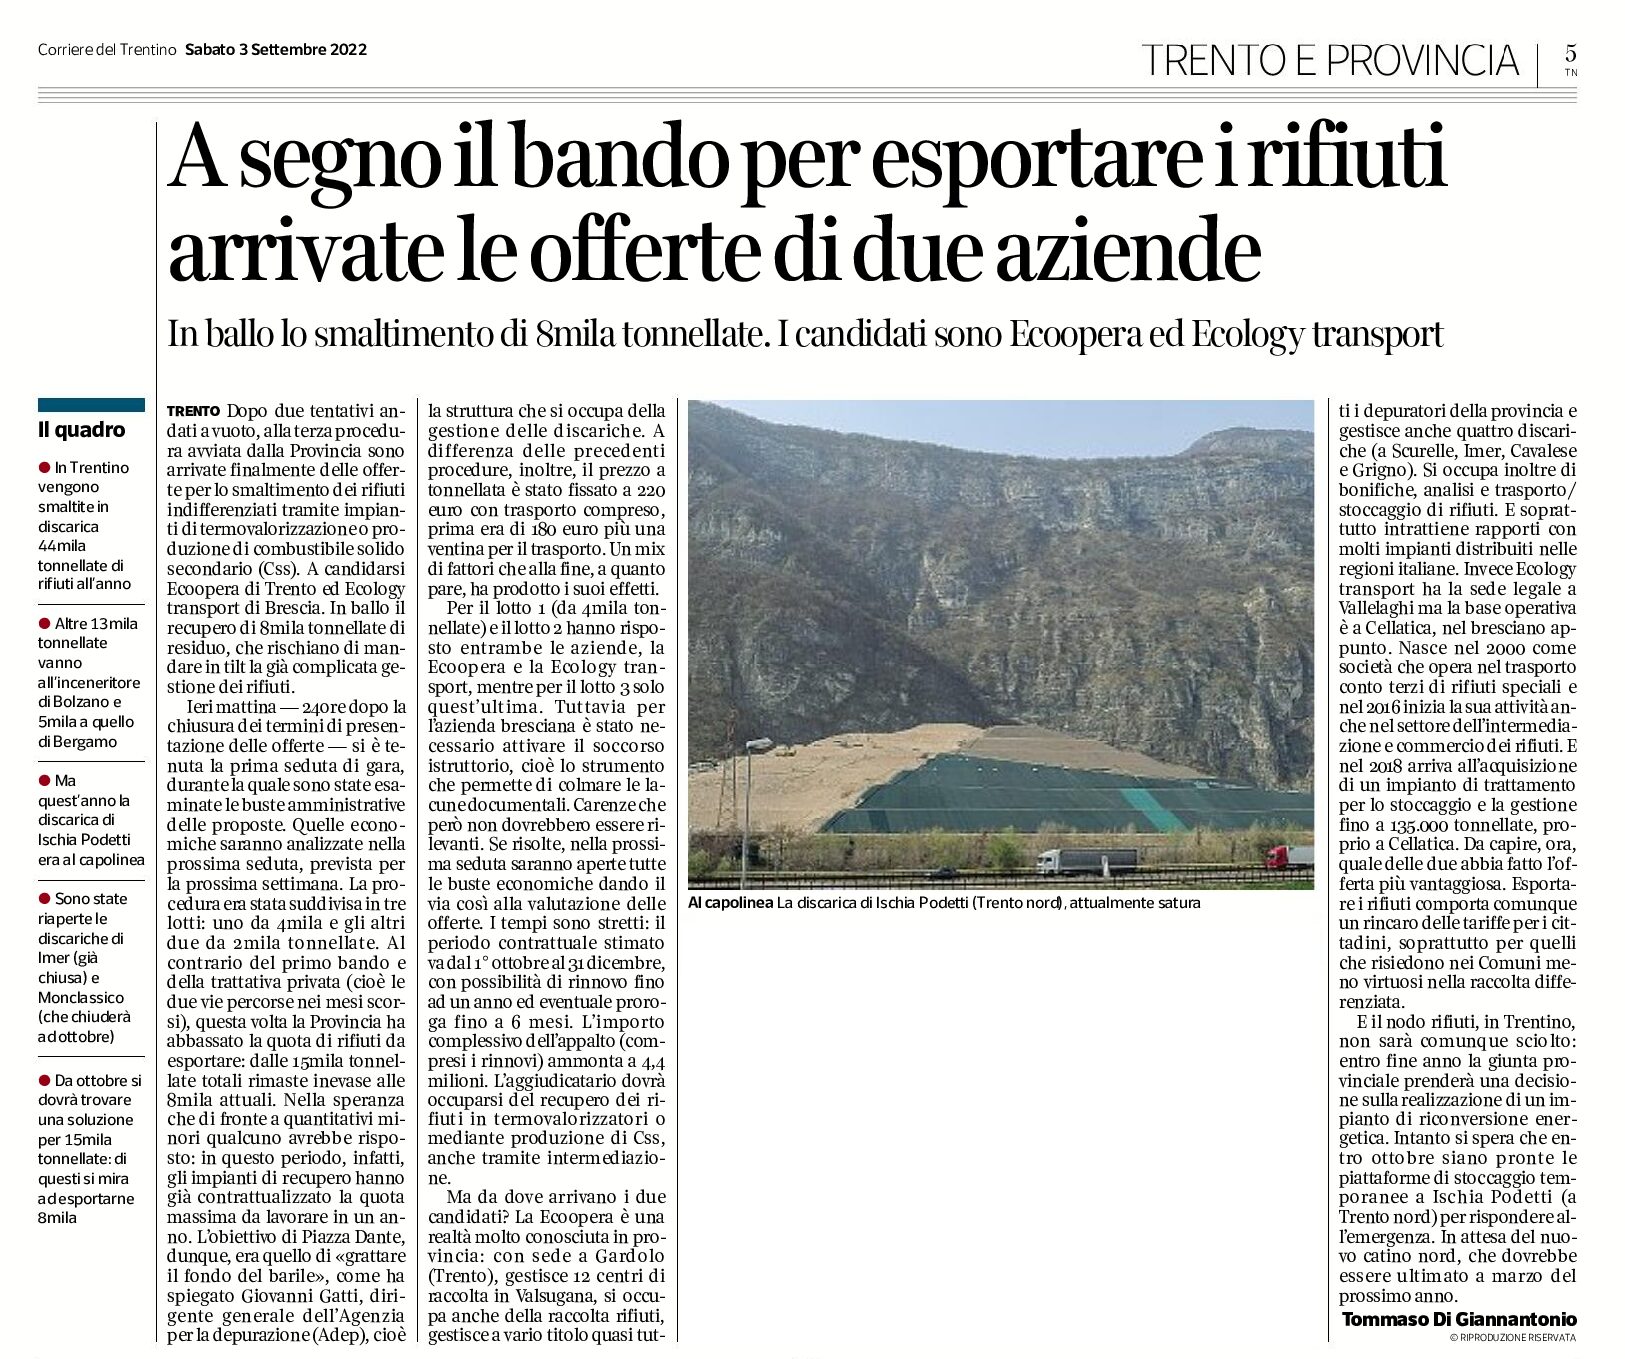 Trentino: a segno il bando per esportare i rifiuti. Arrivate le offerte di due aziende